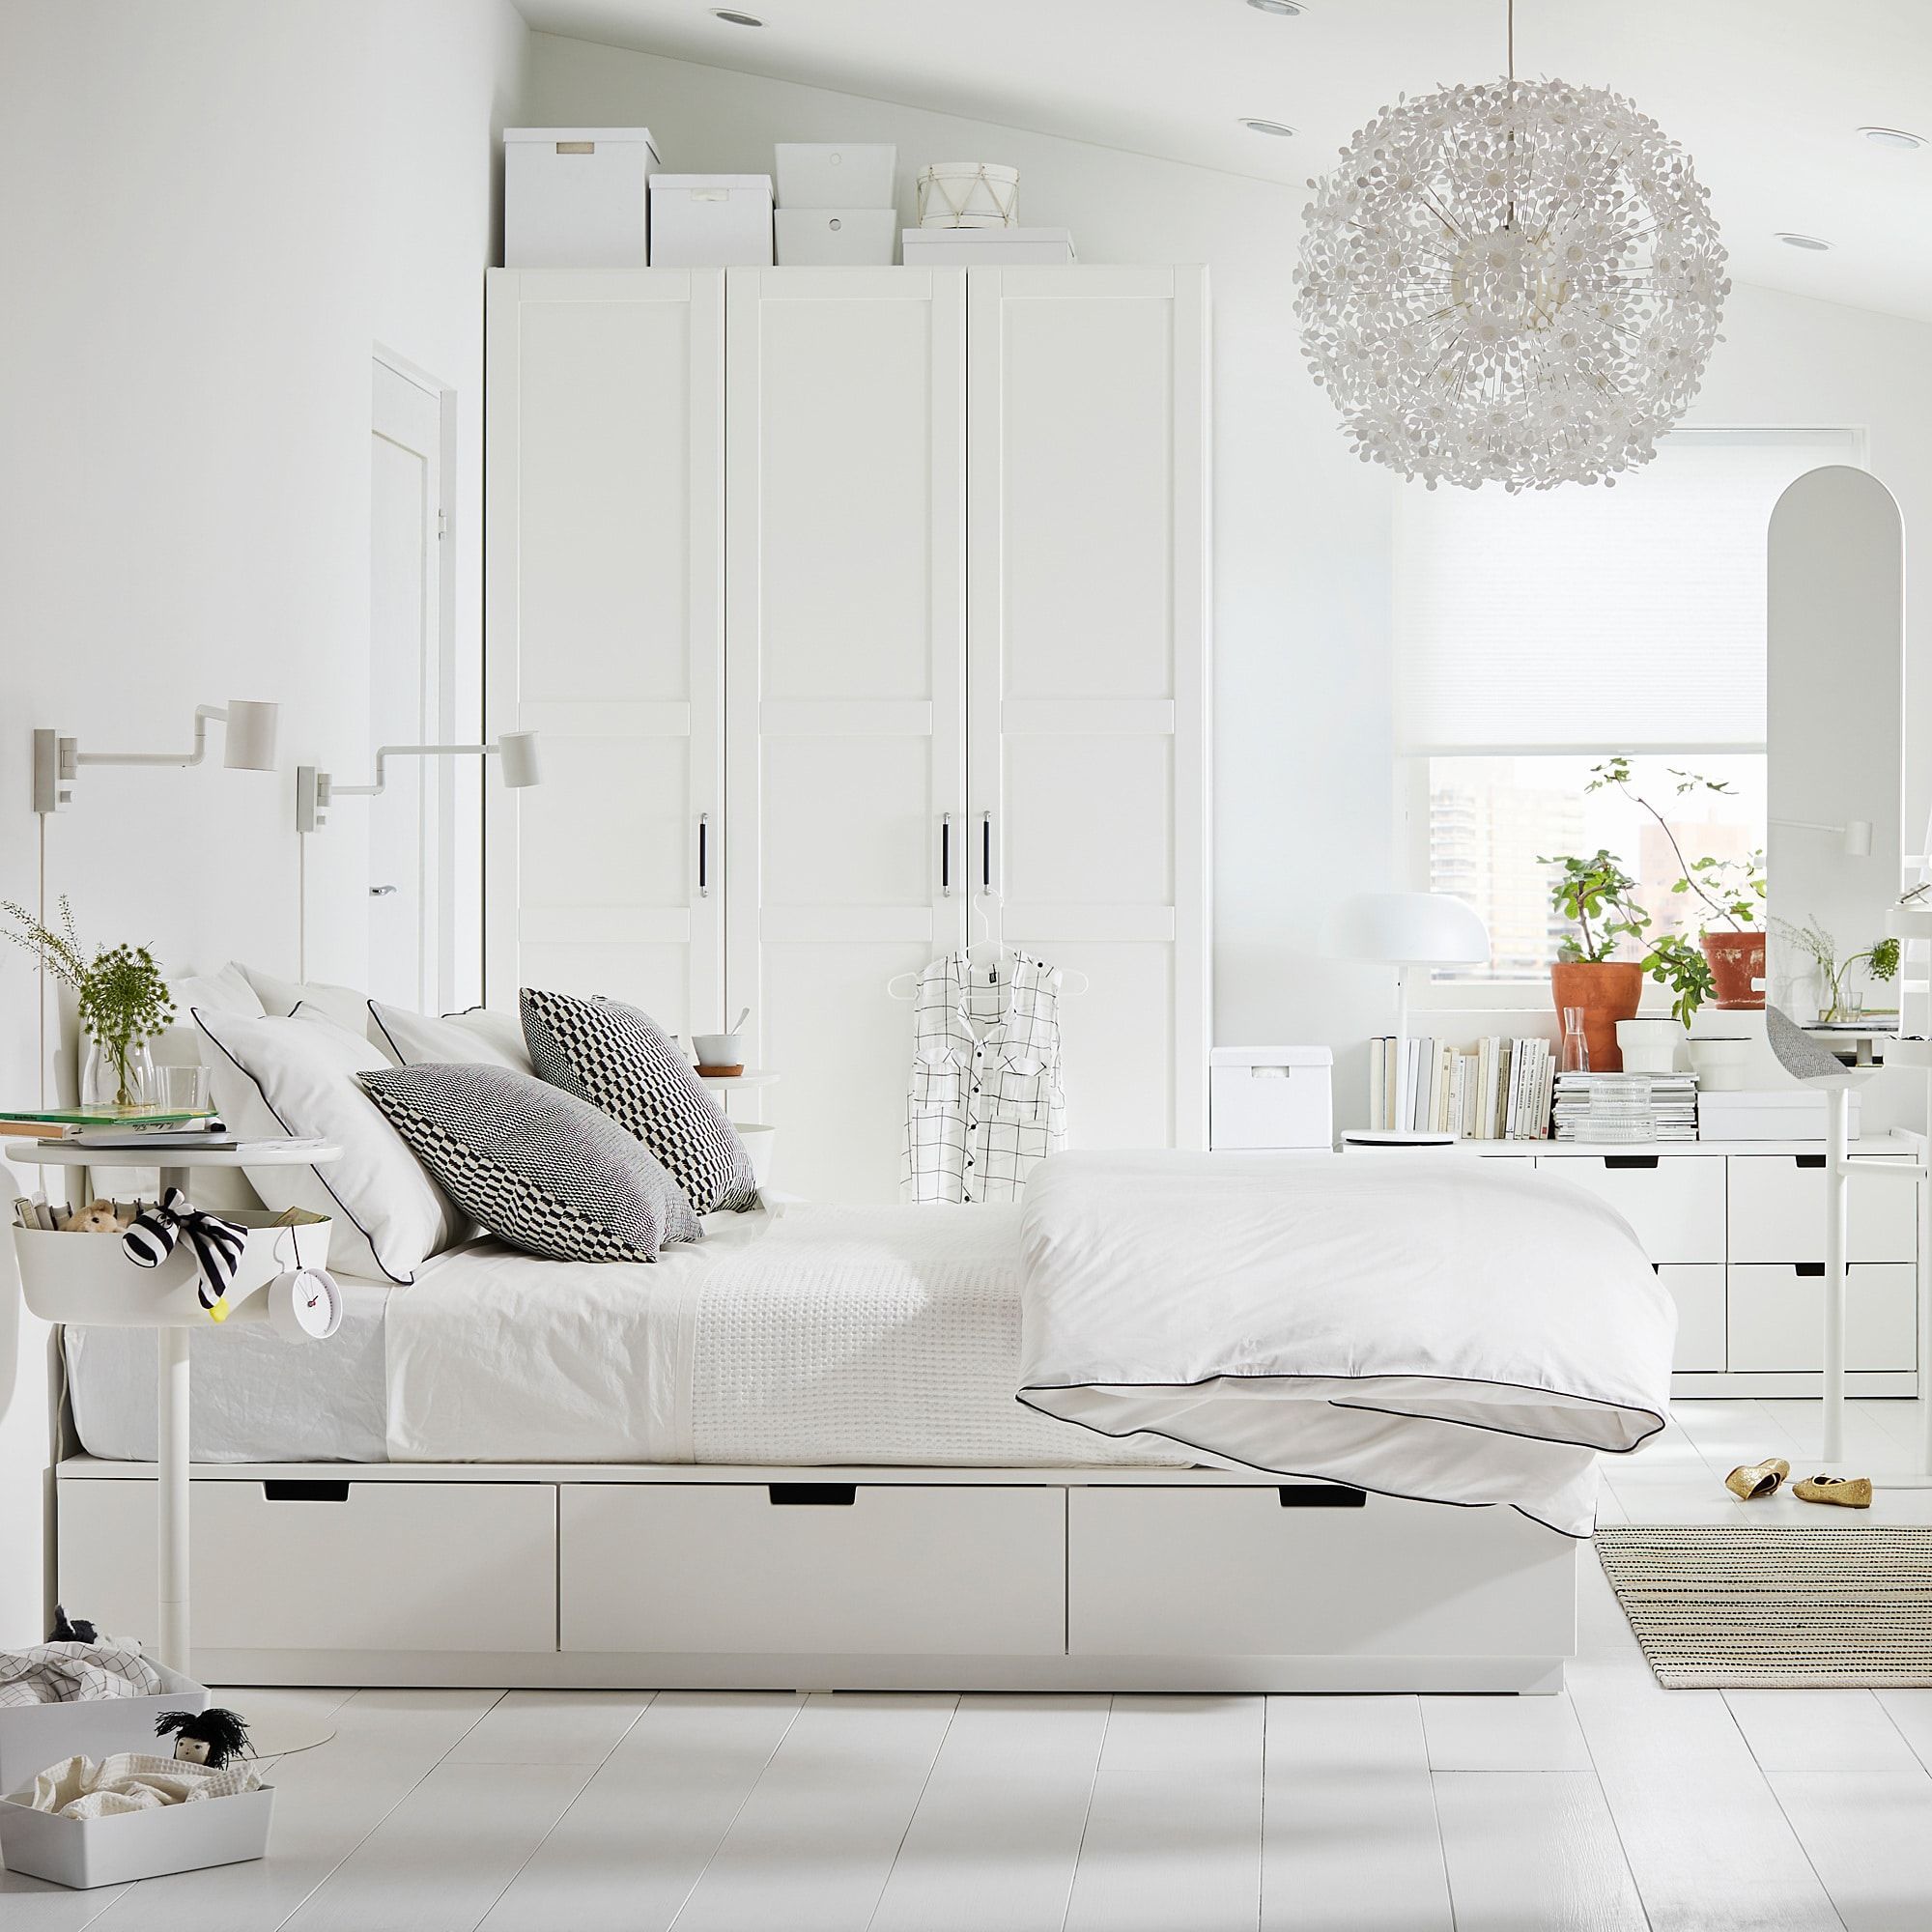 Ideas para decorar un dormitorio de matrimonio con muebles blancos